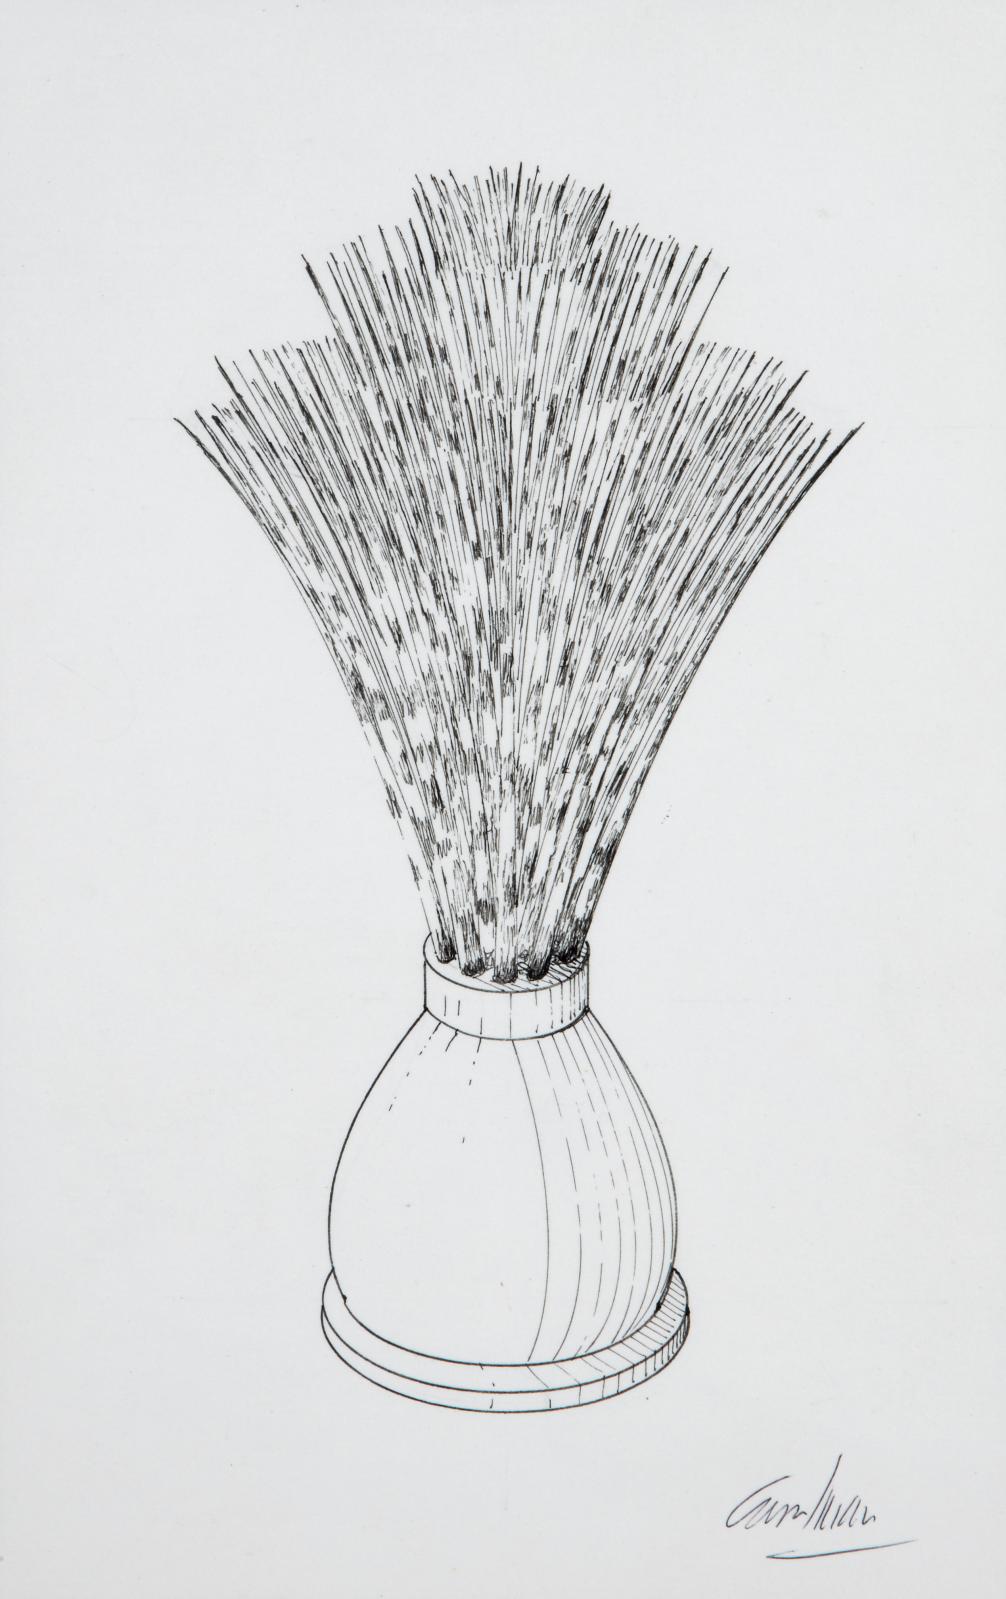 319 €Jacques Carelman (1929-2012), Blaireau en piquant de porc-épic, dessin original au feutre sur papier pour son Catalogue d’objets introuvables, si